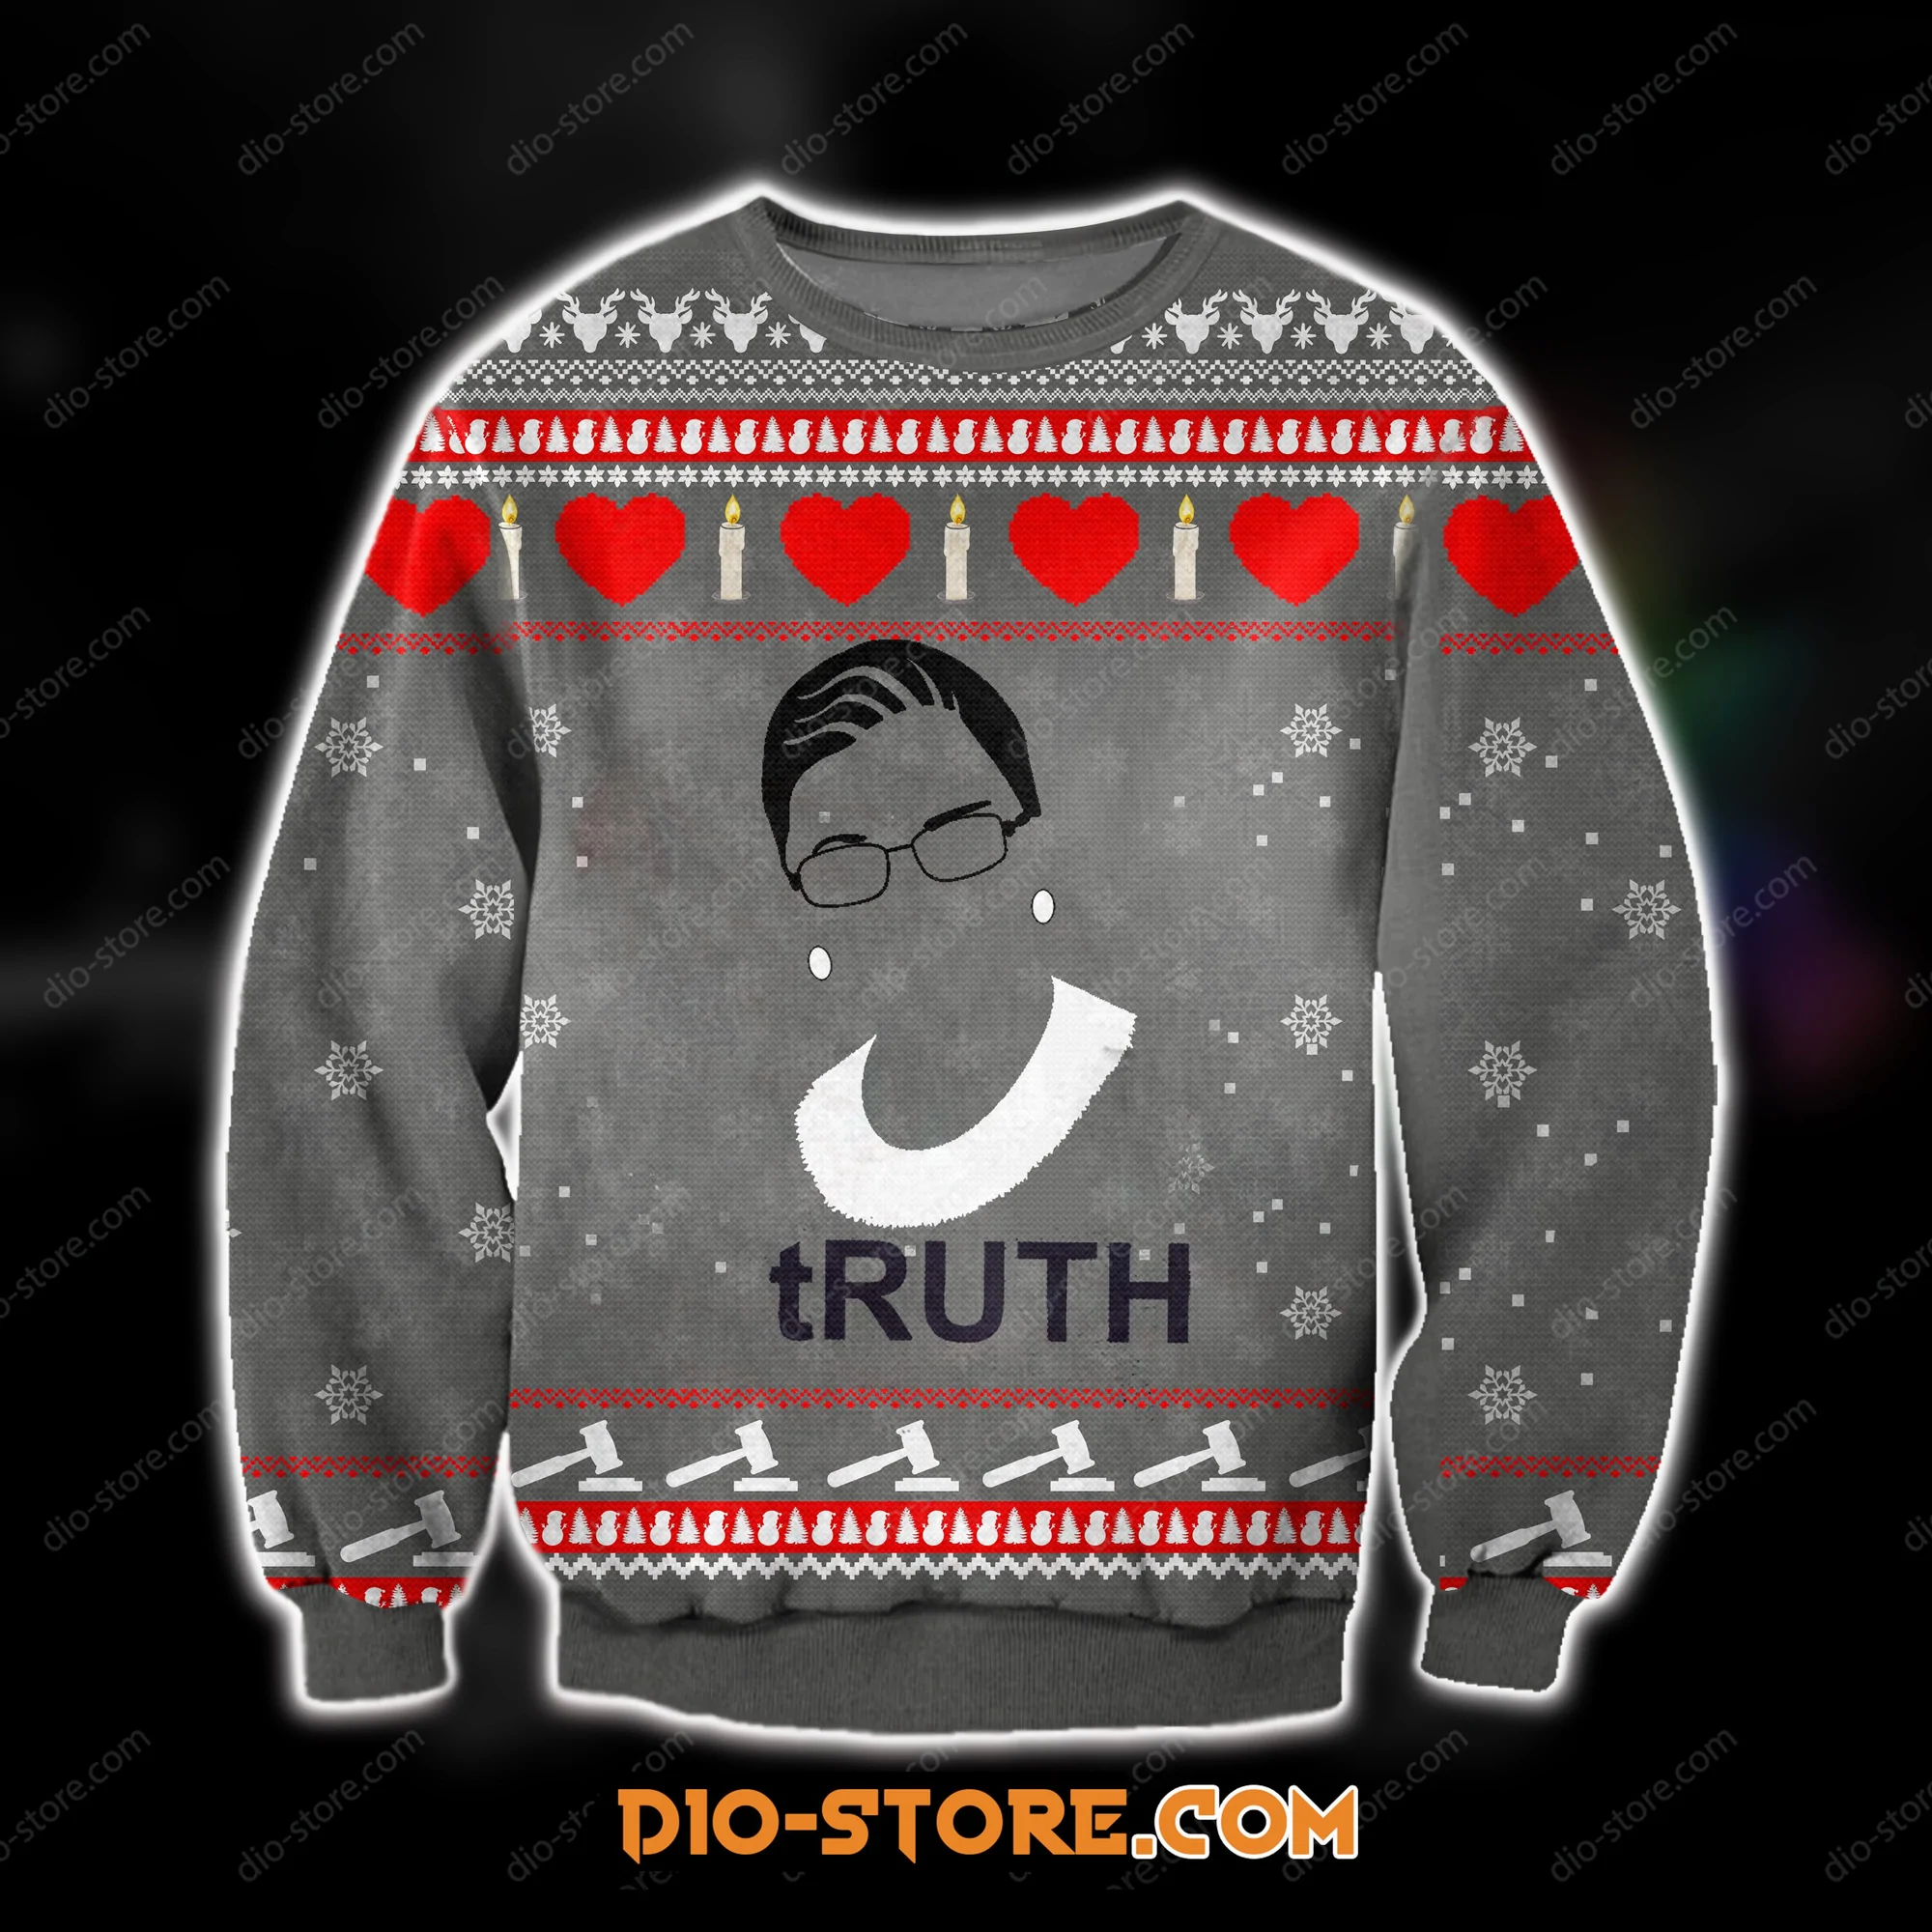 Ruth Bader Ginsburg Ugly Christmas Sweater